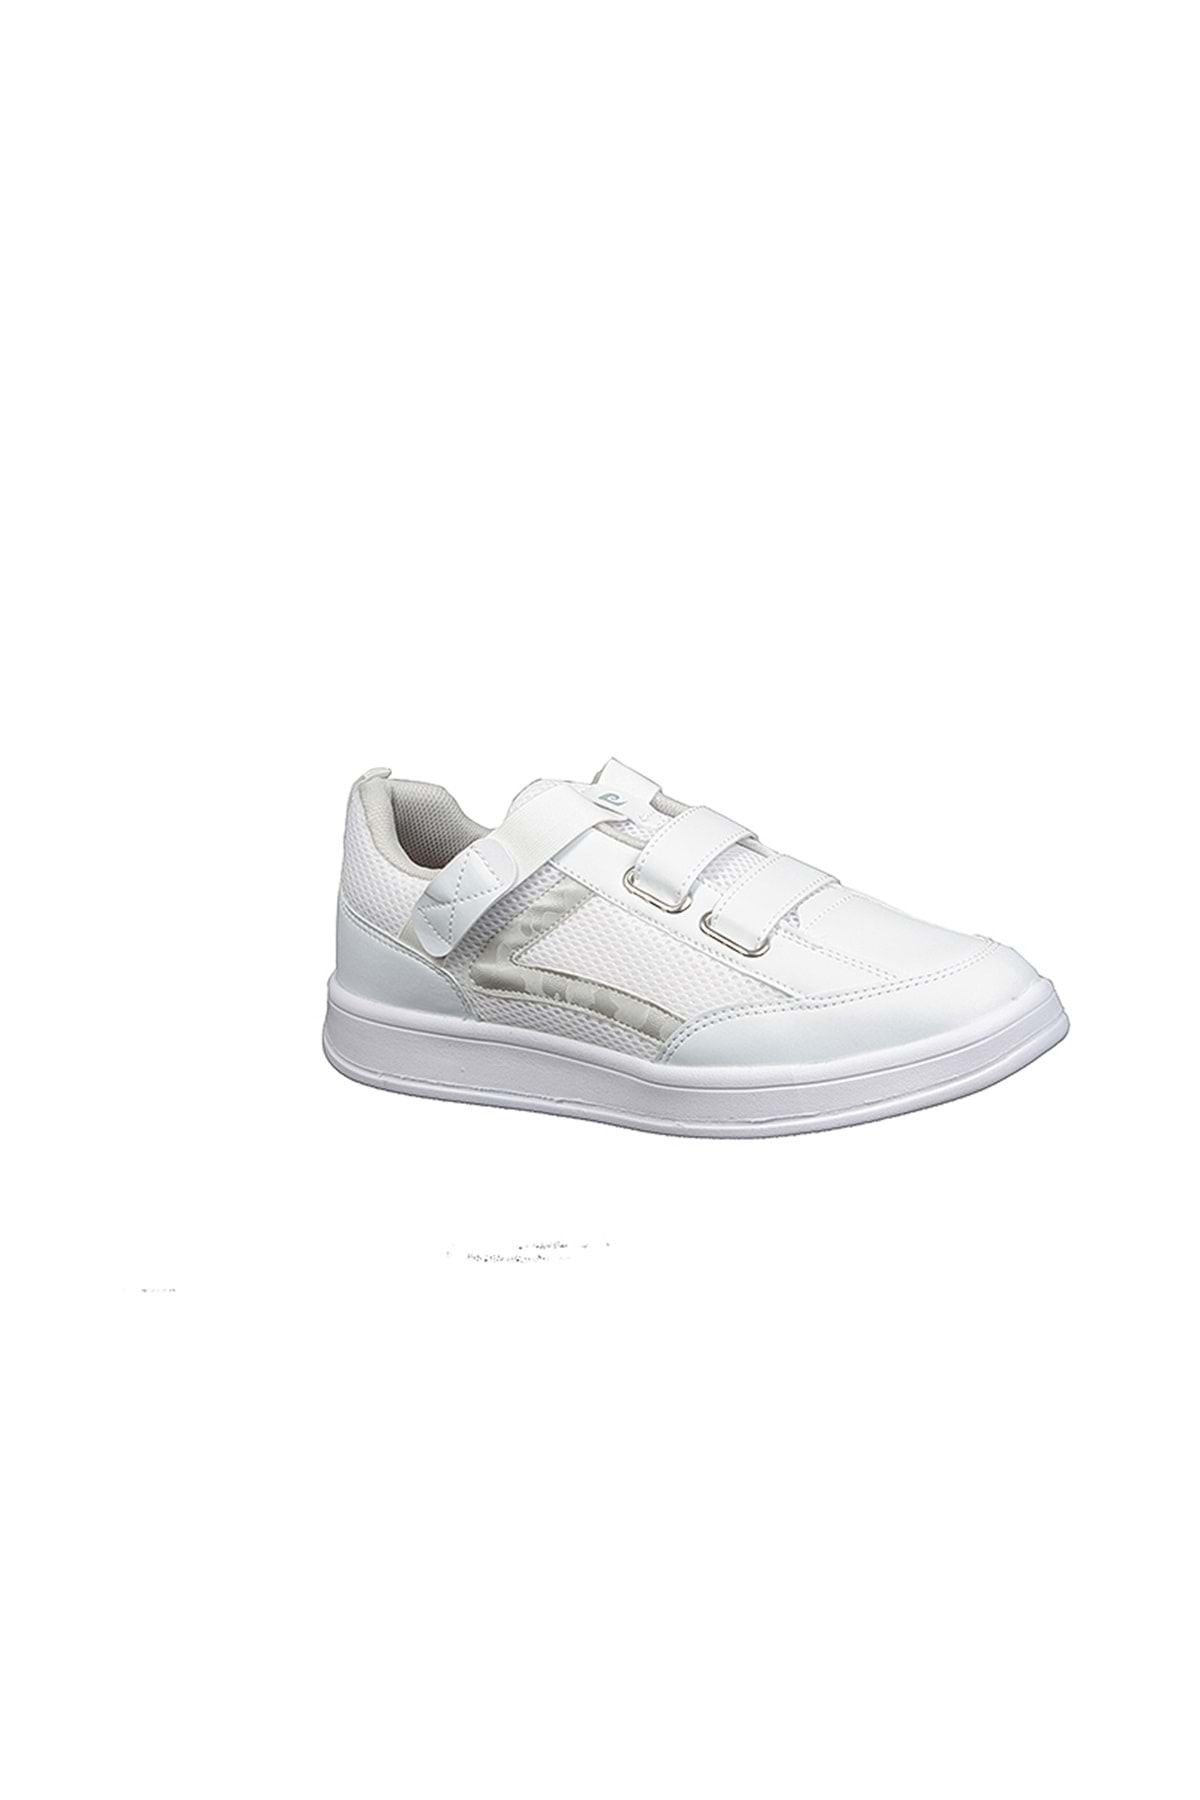 Pierre Cardin Pc-31154 Riklalı Unisex Sneaker Ayakkabı - Beyaz - 42